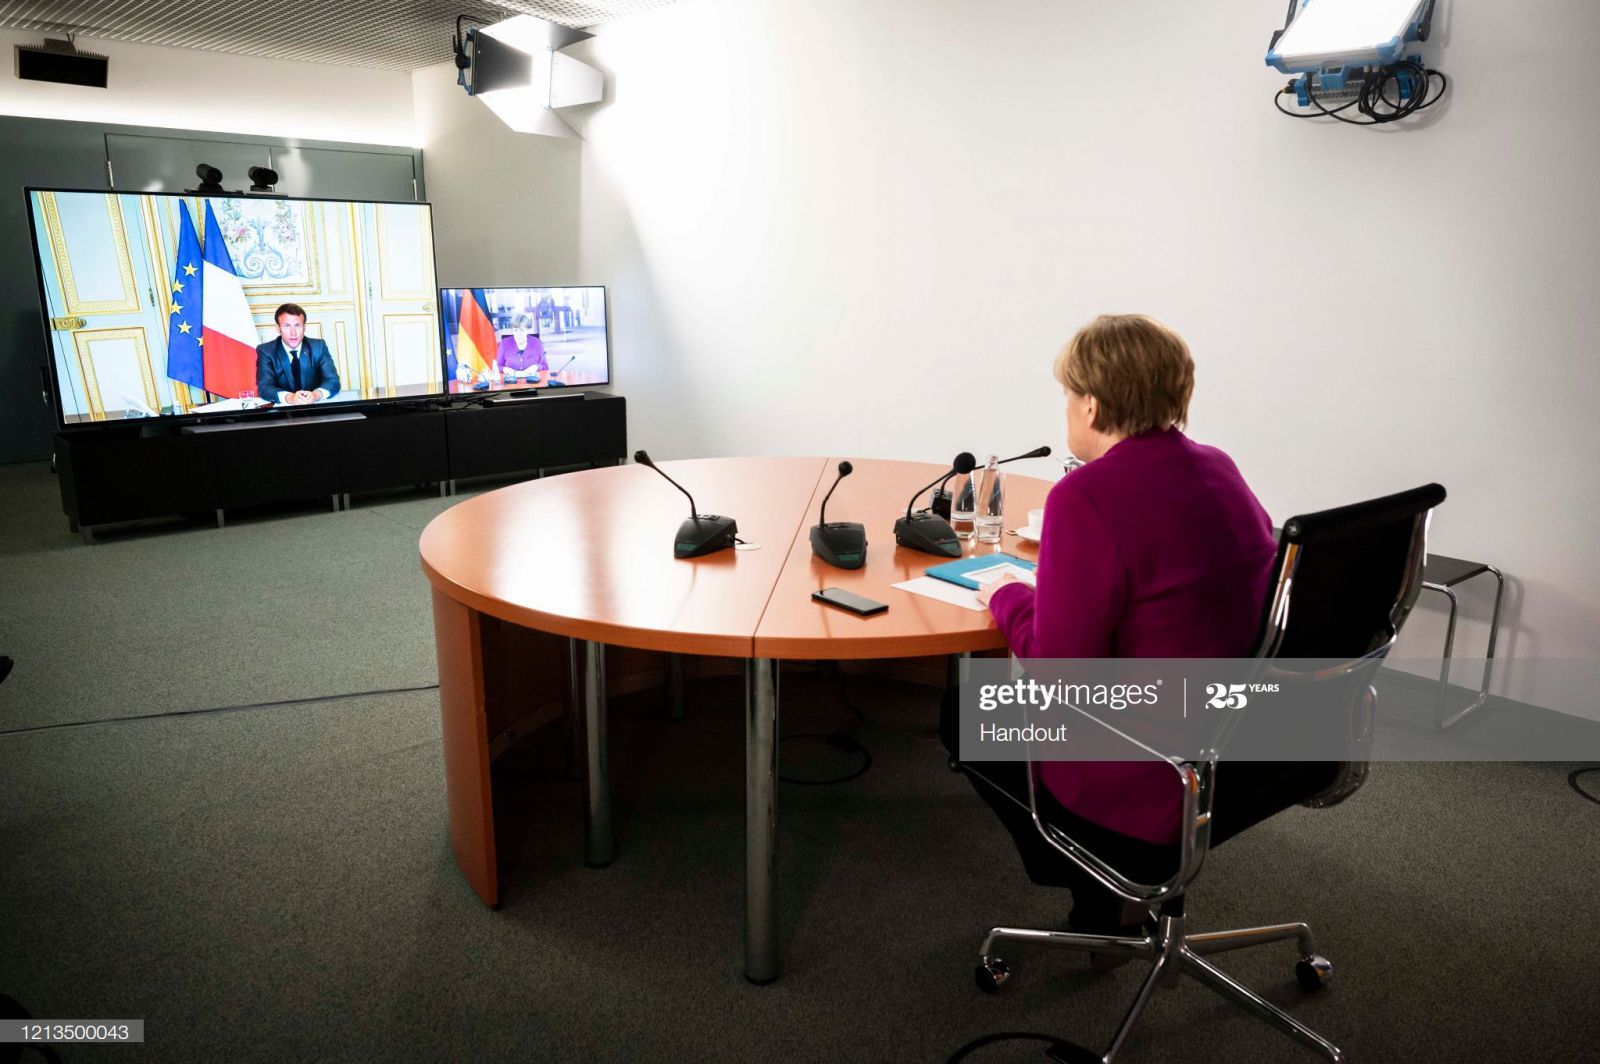 Thủ tướng Đức Angela Merkel trong một cuộc họp video với Tổng thống Pháp Emmanuel Macron tại Văn phòng Thủ tướng vào ngày 18/5/2020.